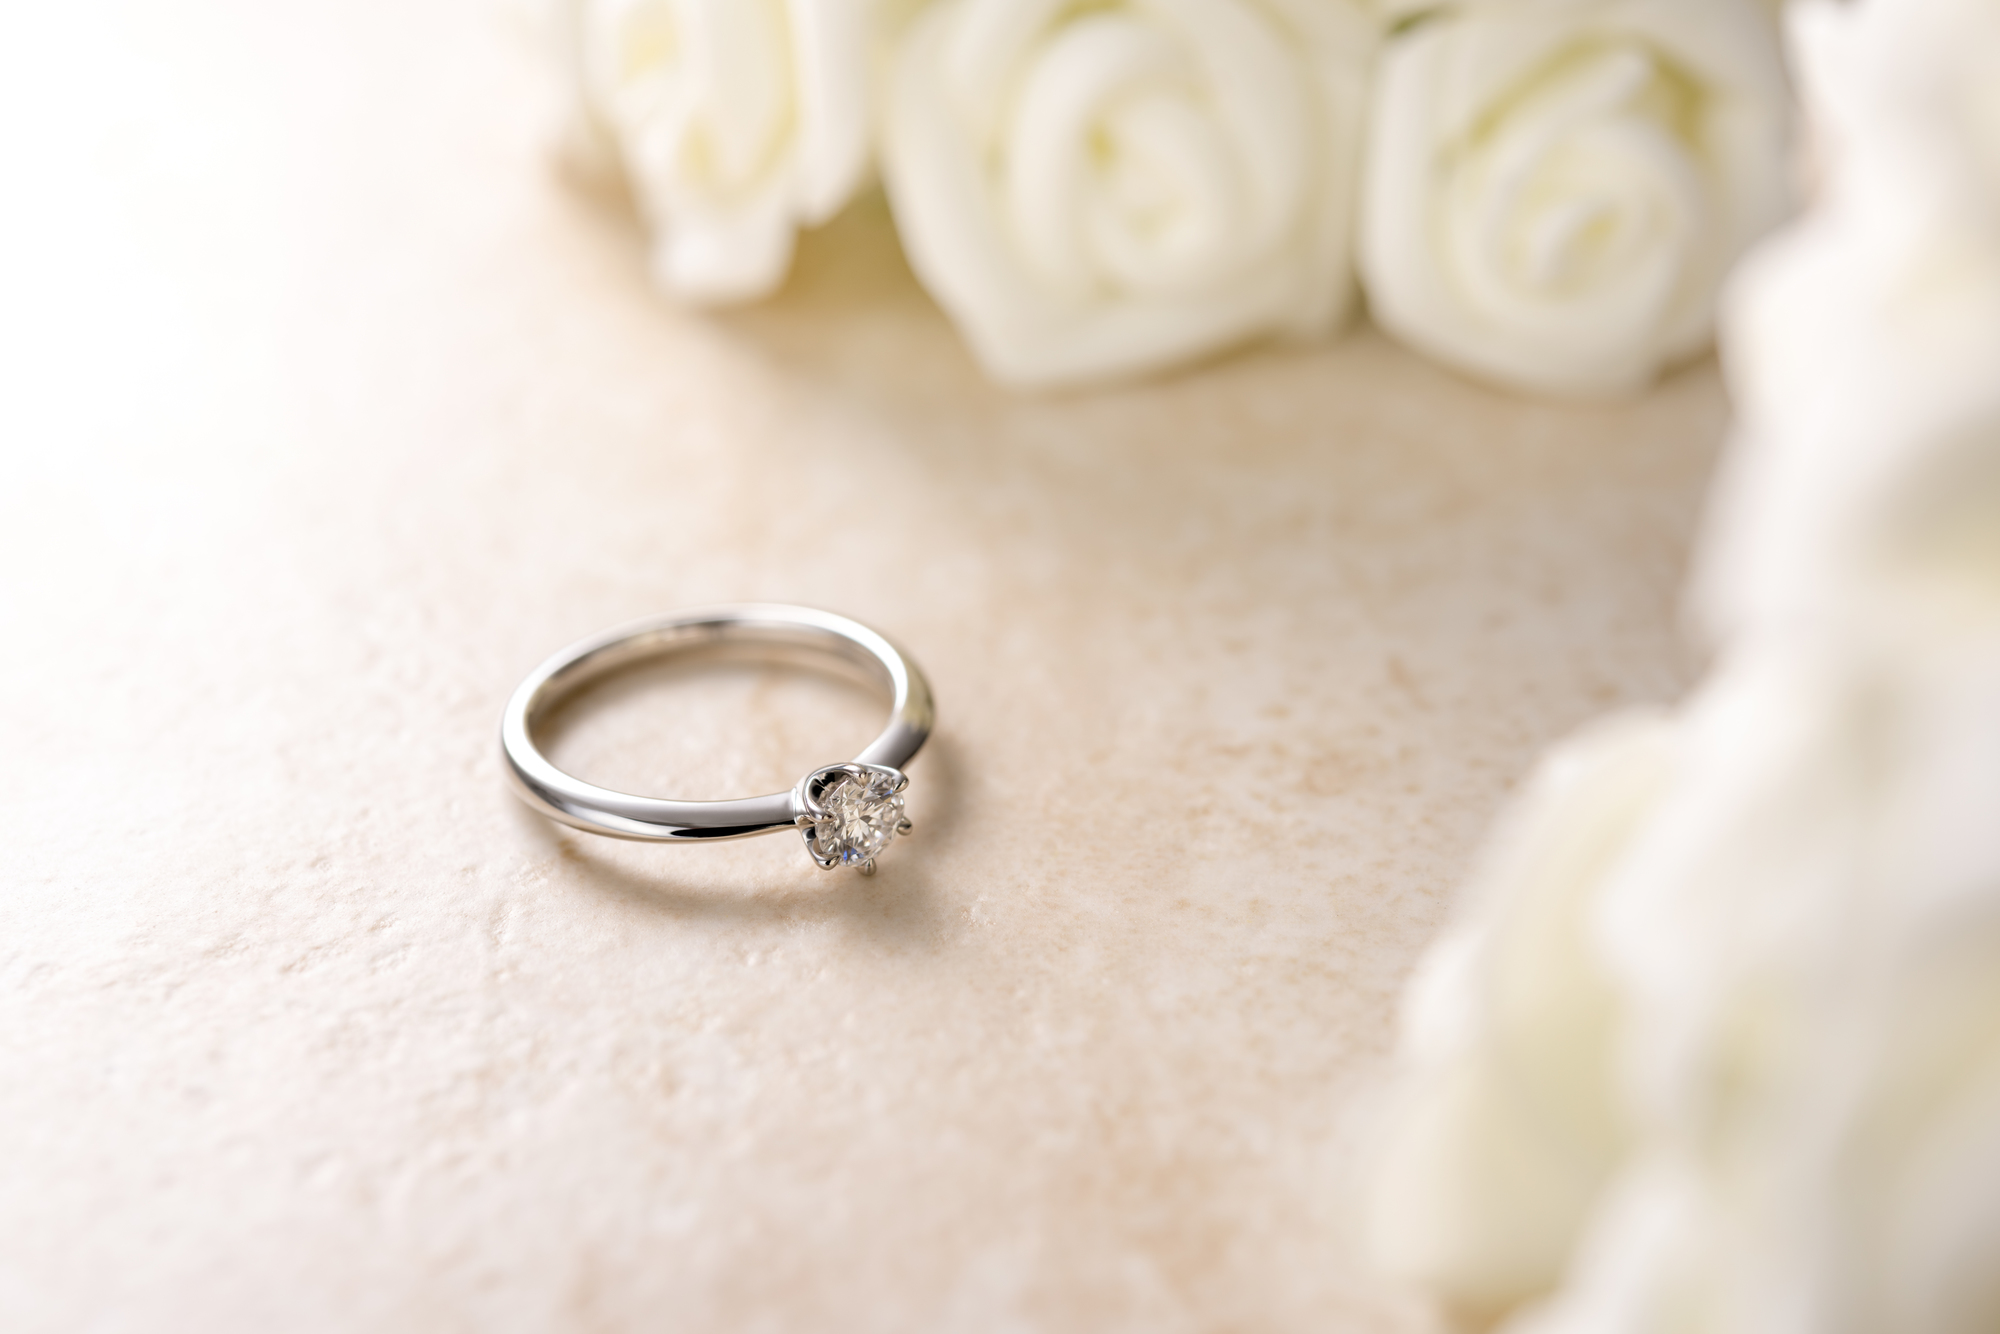 「デザイン」で婚約指輪を選ぶ